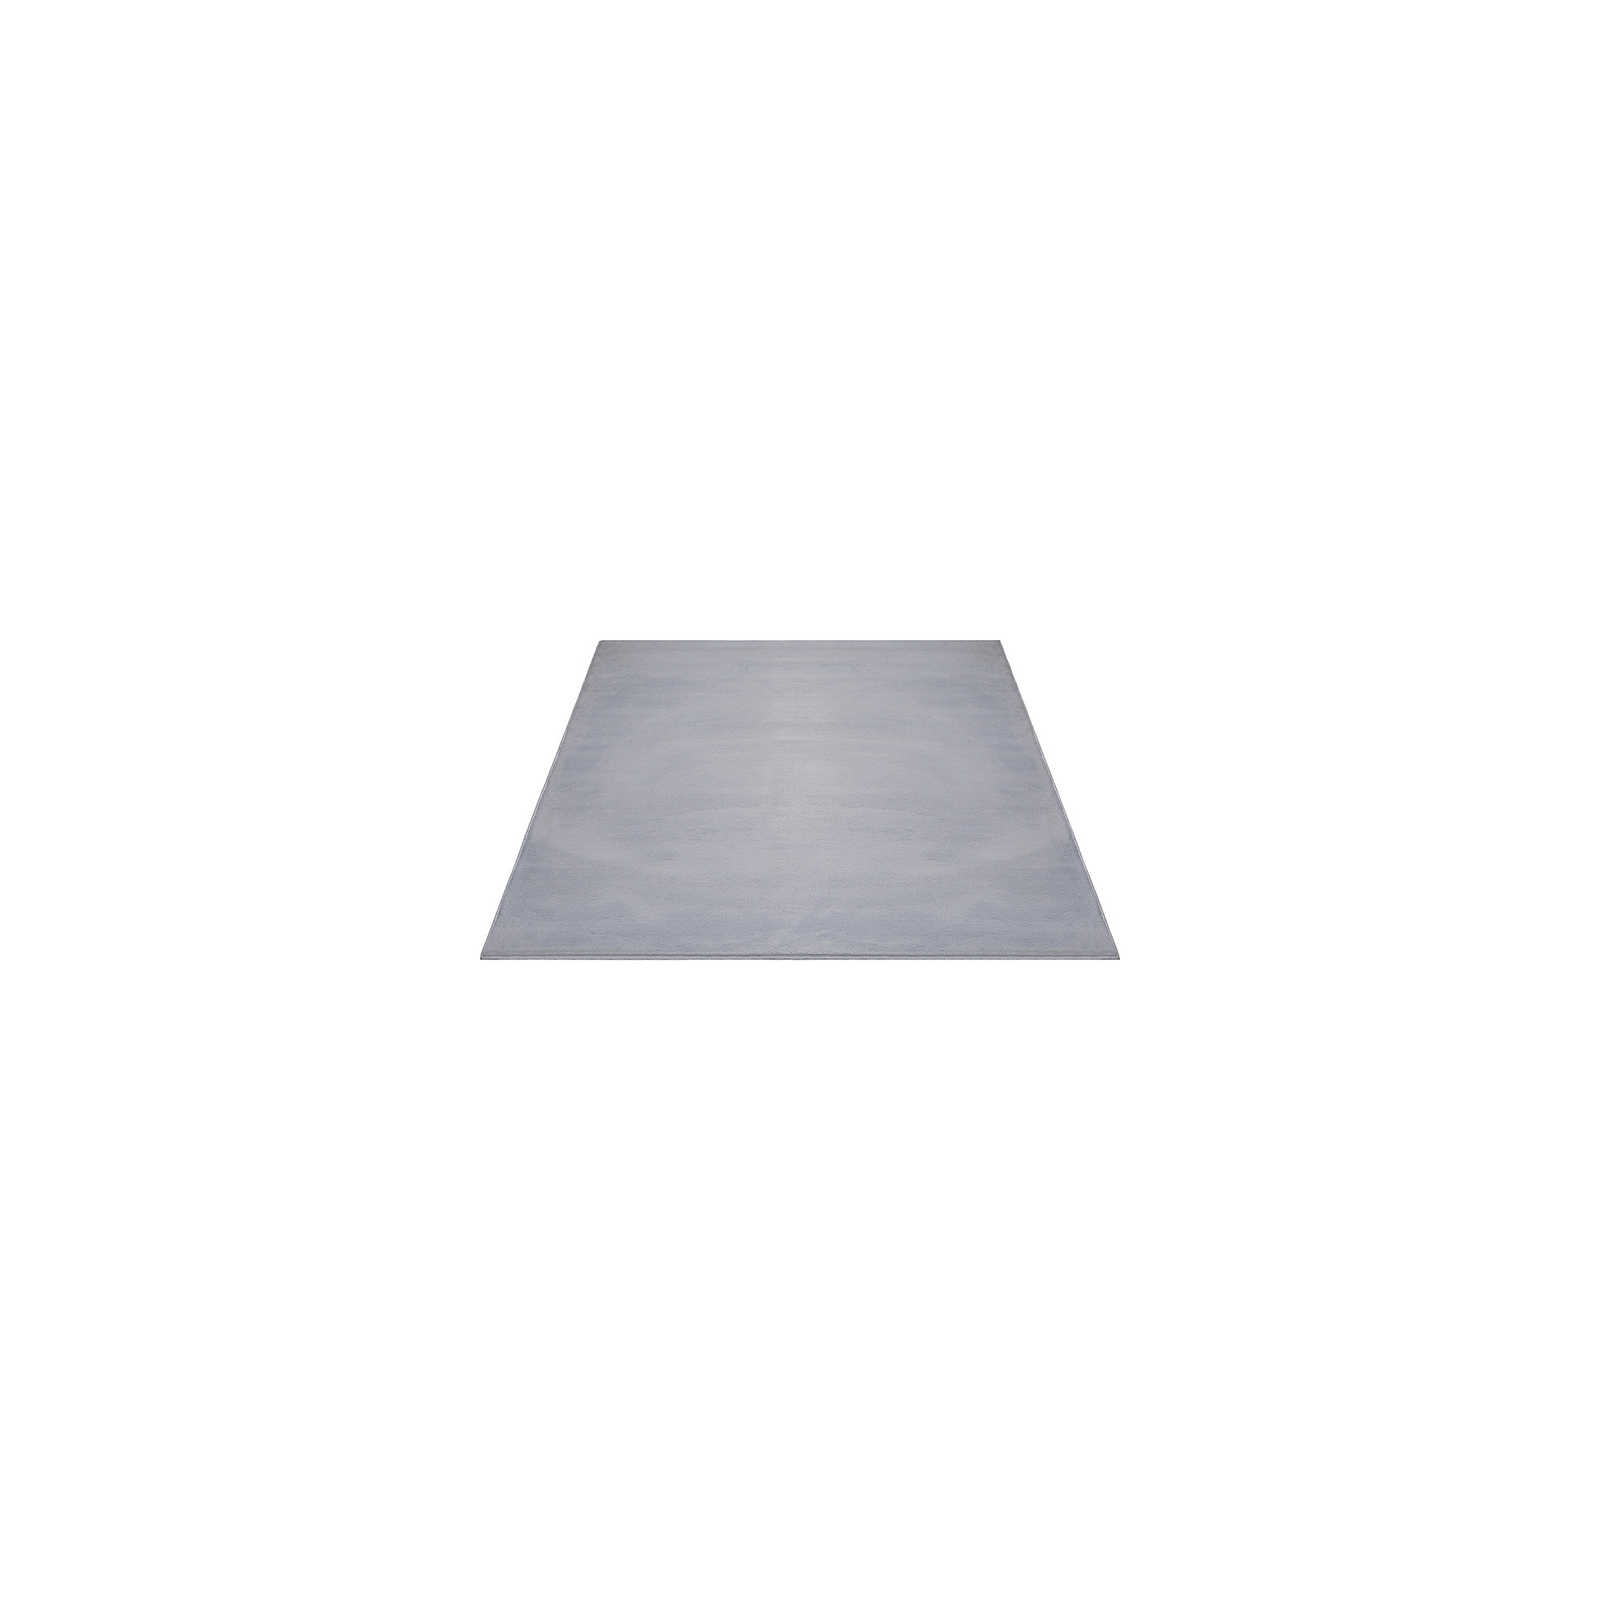 Angenehmer Hochflor Teppich in sanften Grau – 140 x 70 cm
